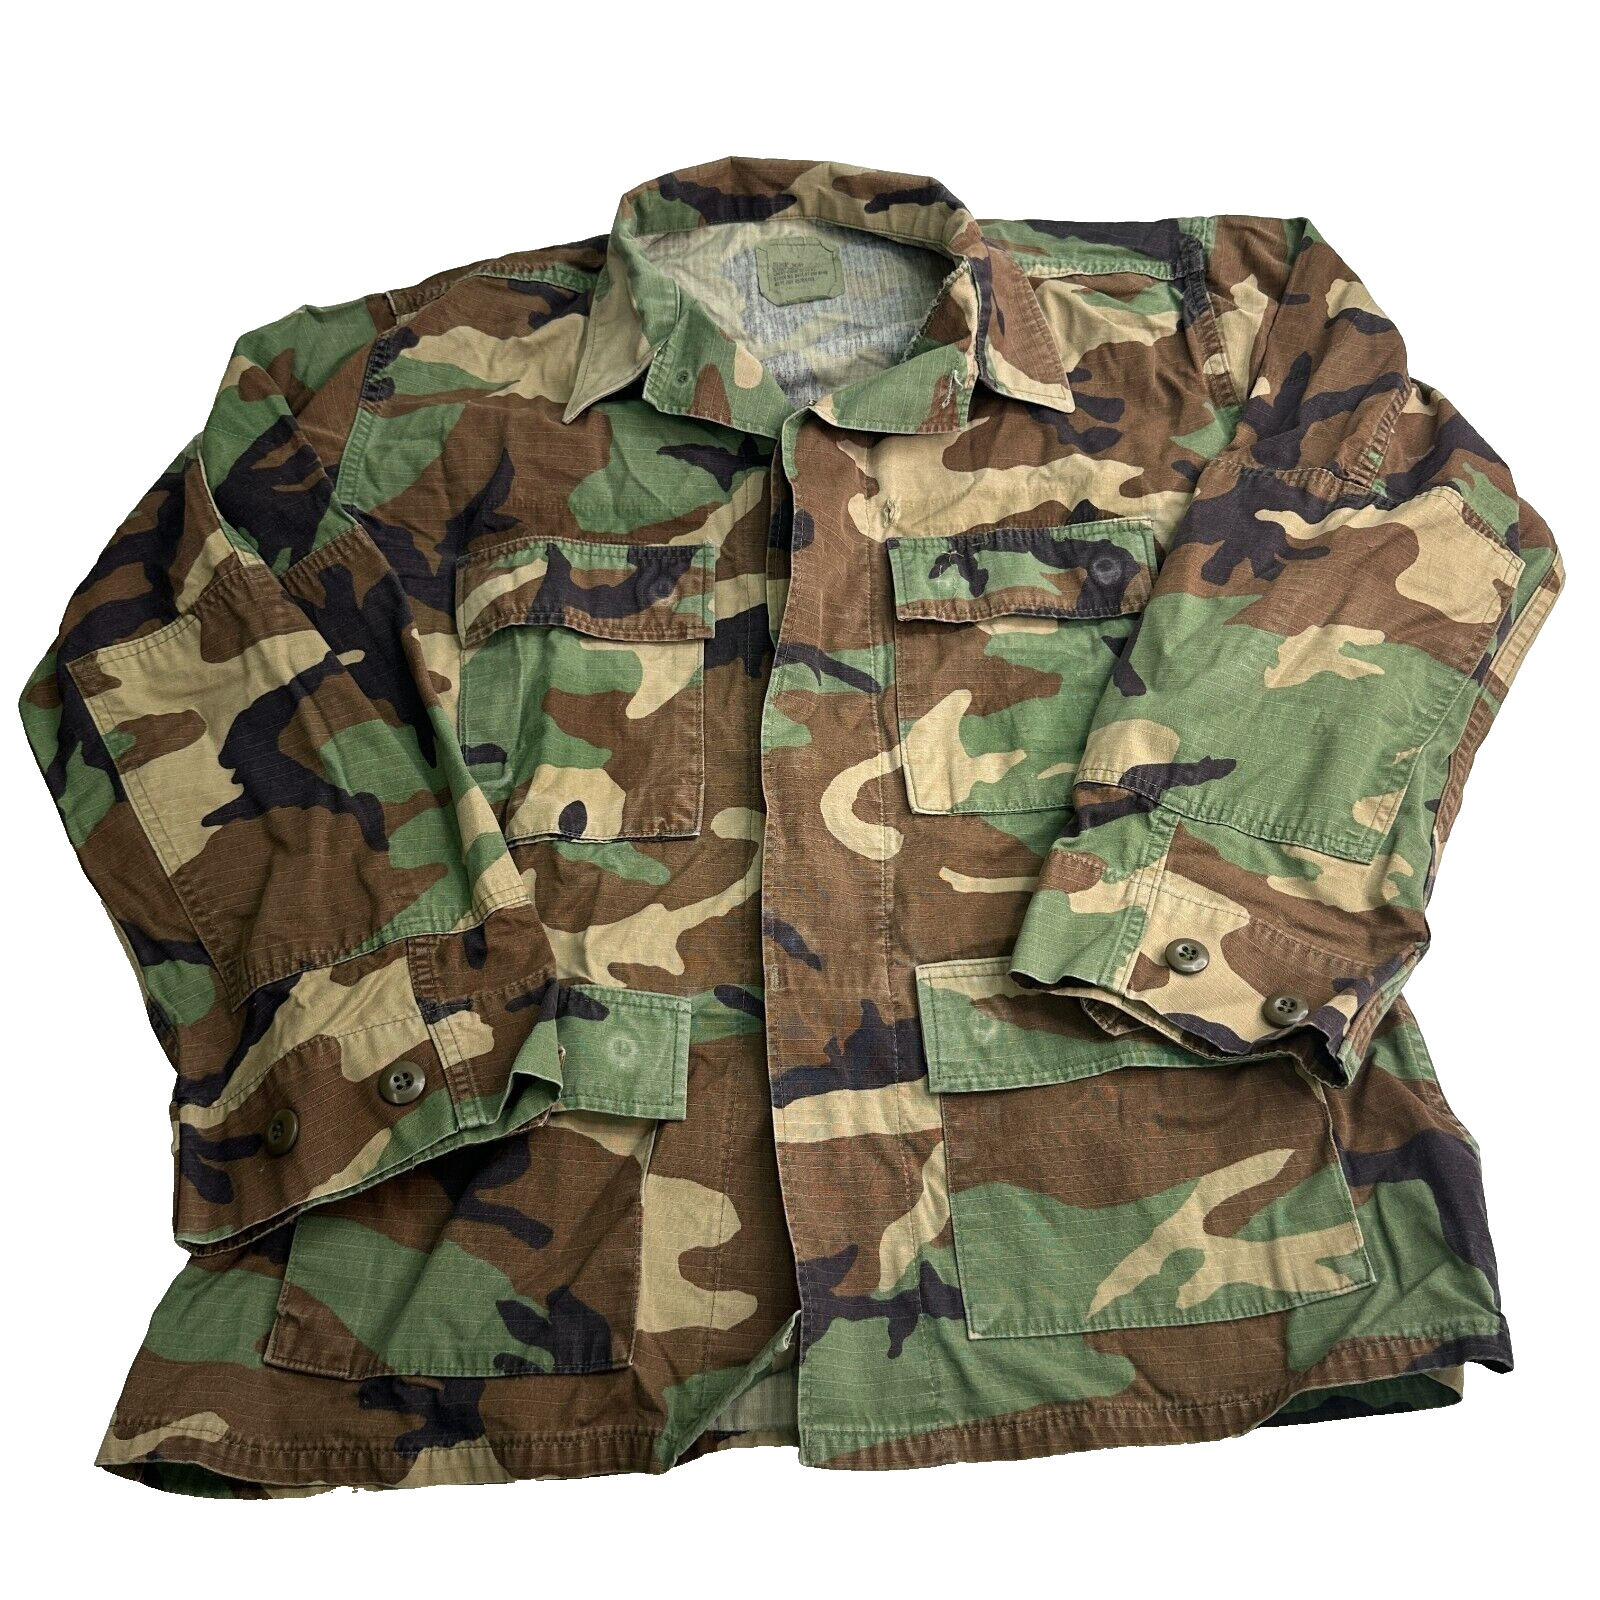 US Army Woodland Camo BDU Hot Weather Coat Jacket 8415-01-390-8548 Medium Short